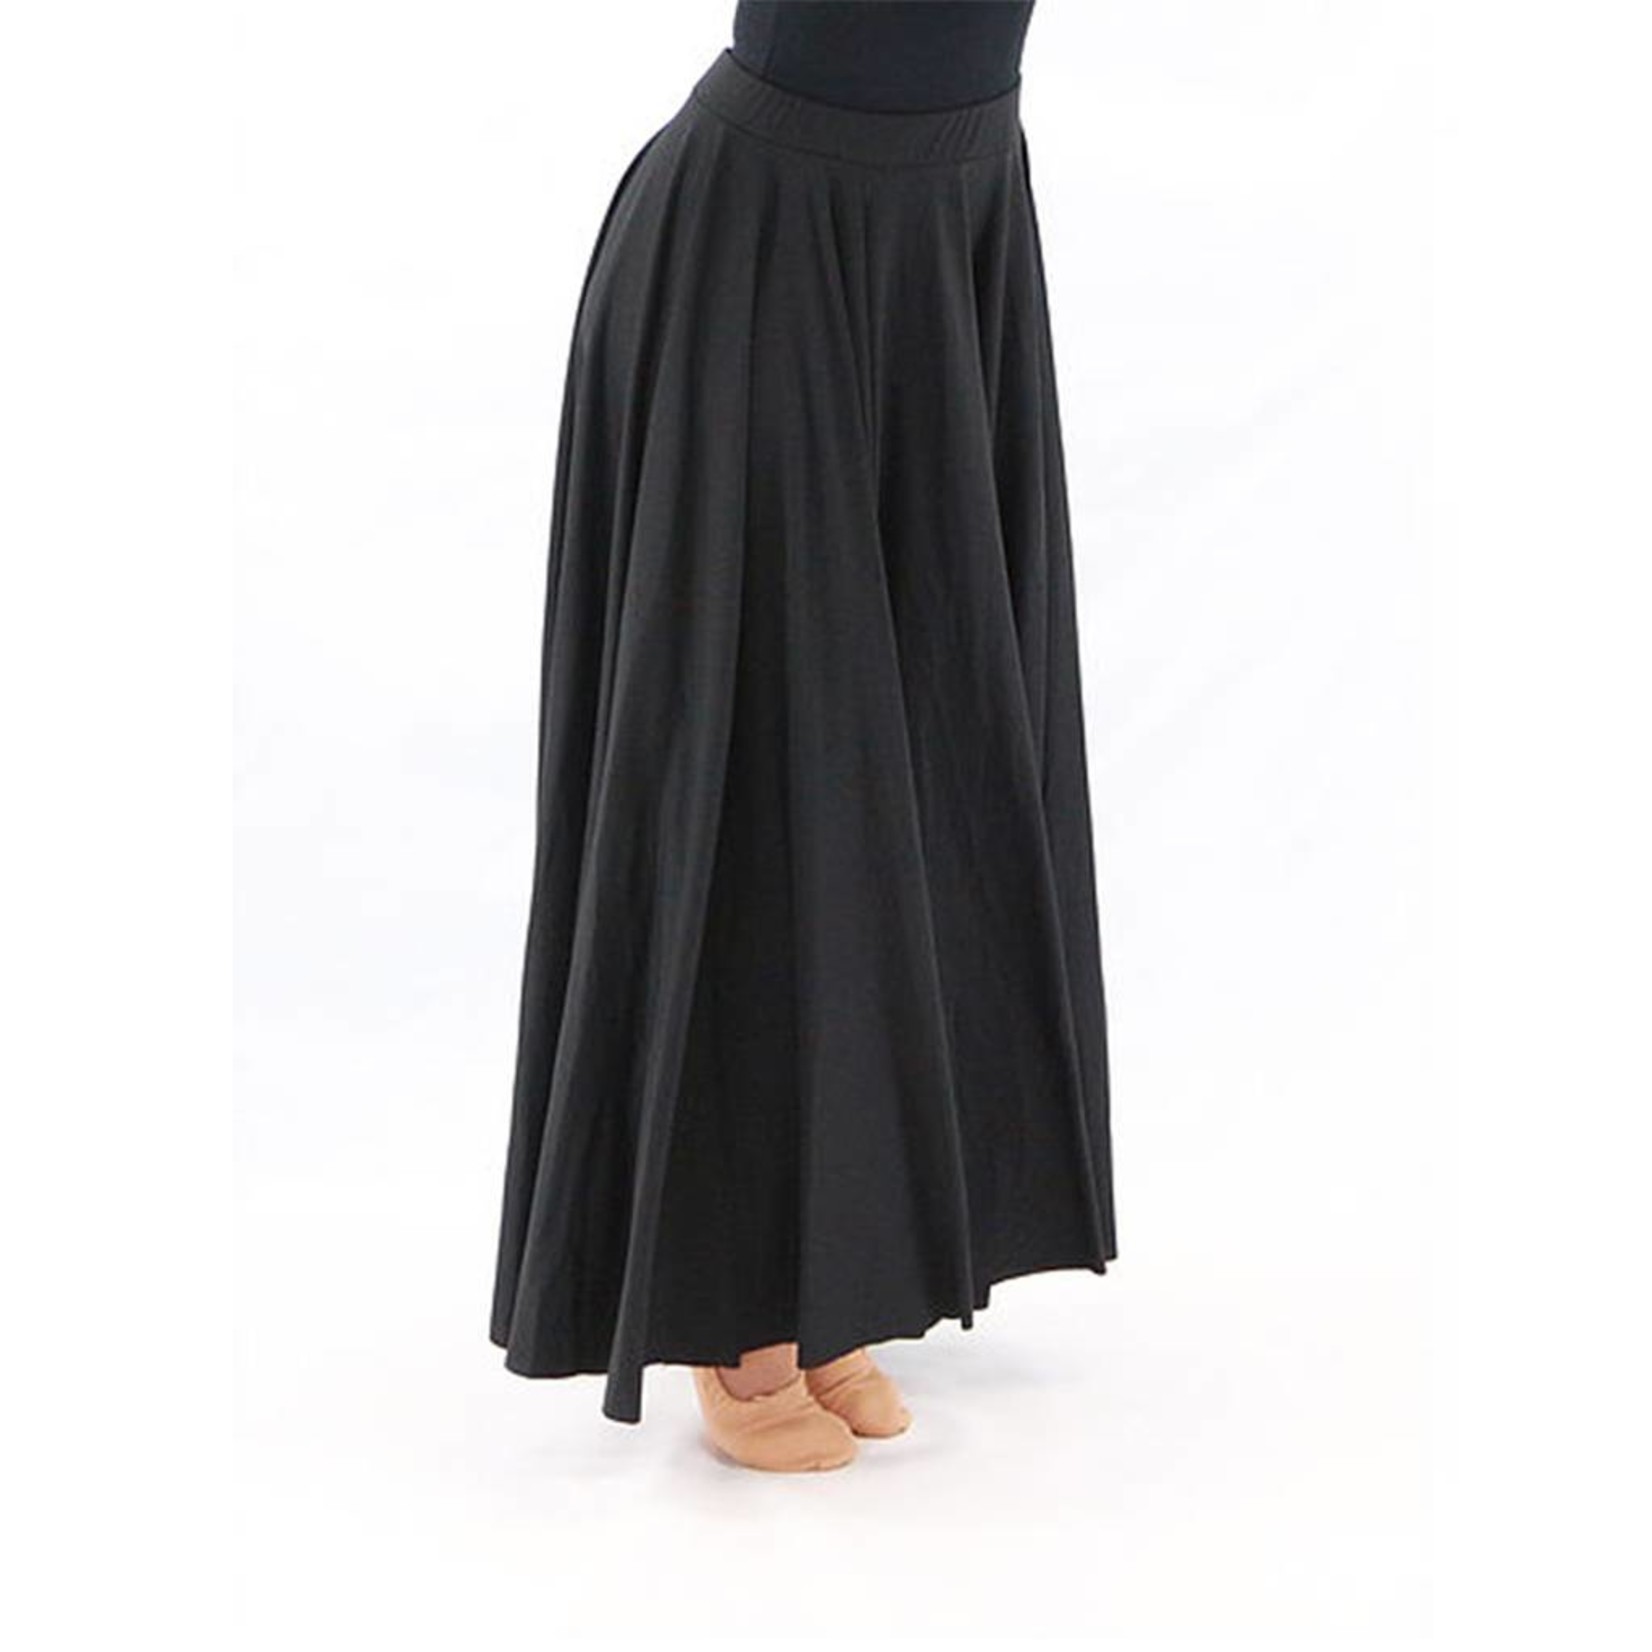 Basic Moves BM2235G- Liturgical Dance Skirt- Girls